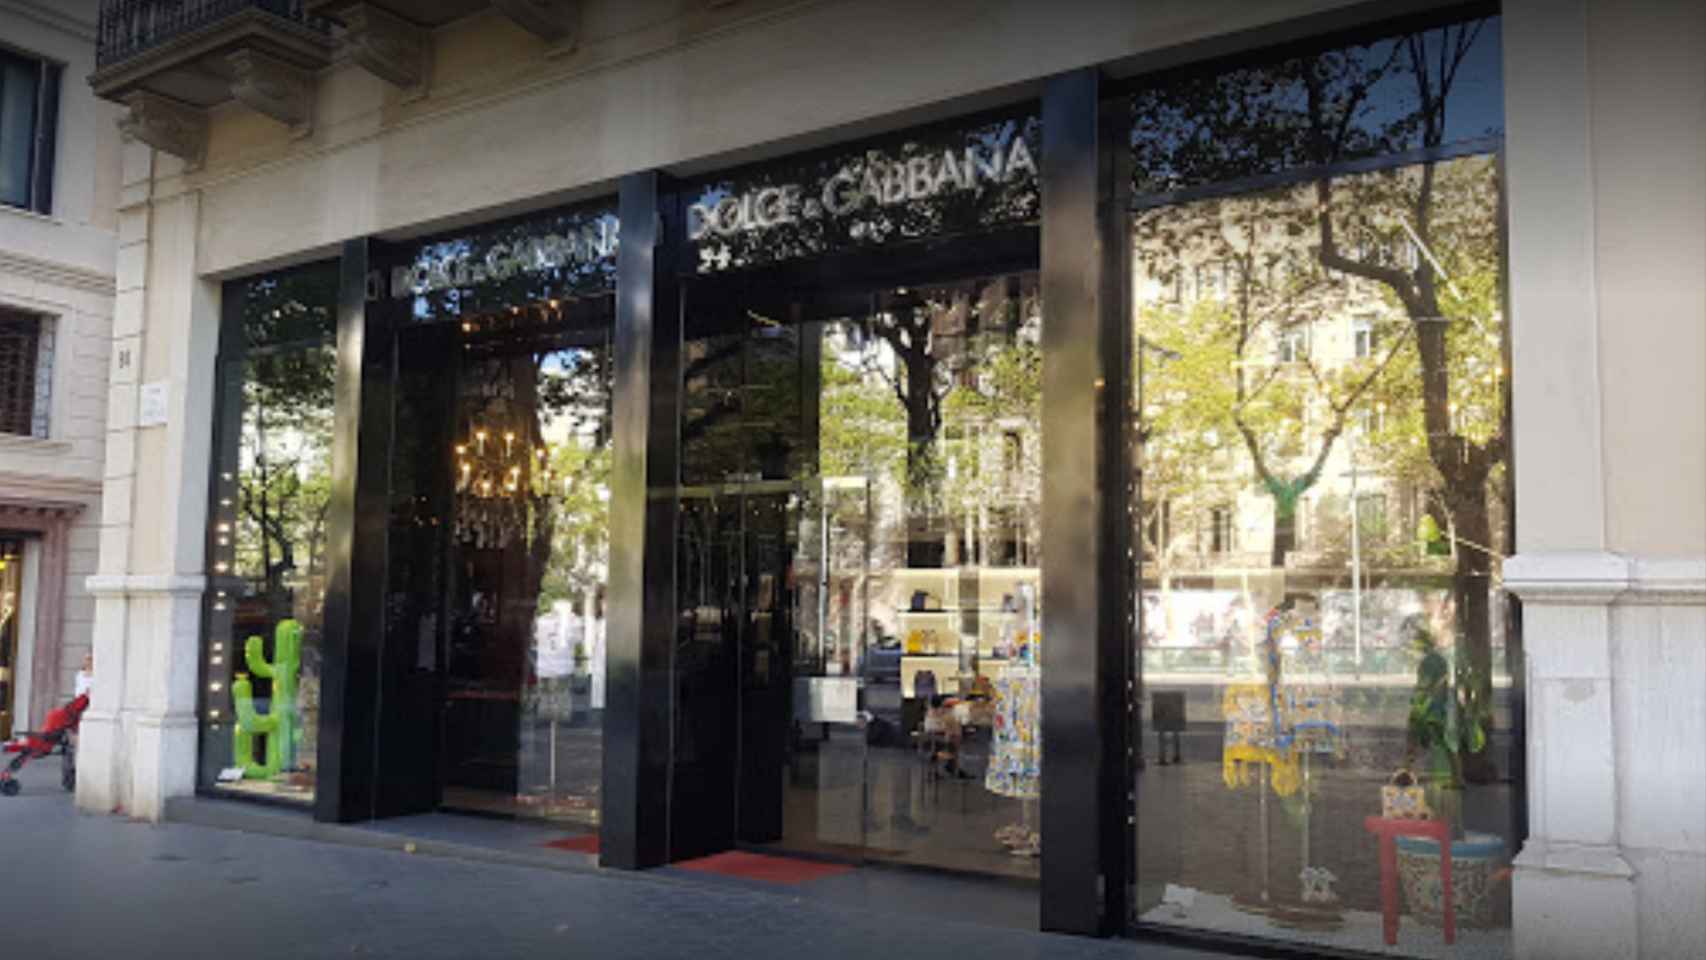 Escaparate de Dolce Gabanna en Paseo de Gràcia, una de las tiendas de lujo asaltadas / GOOGLE MAPS